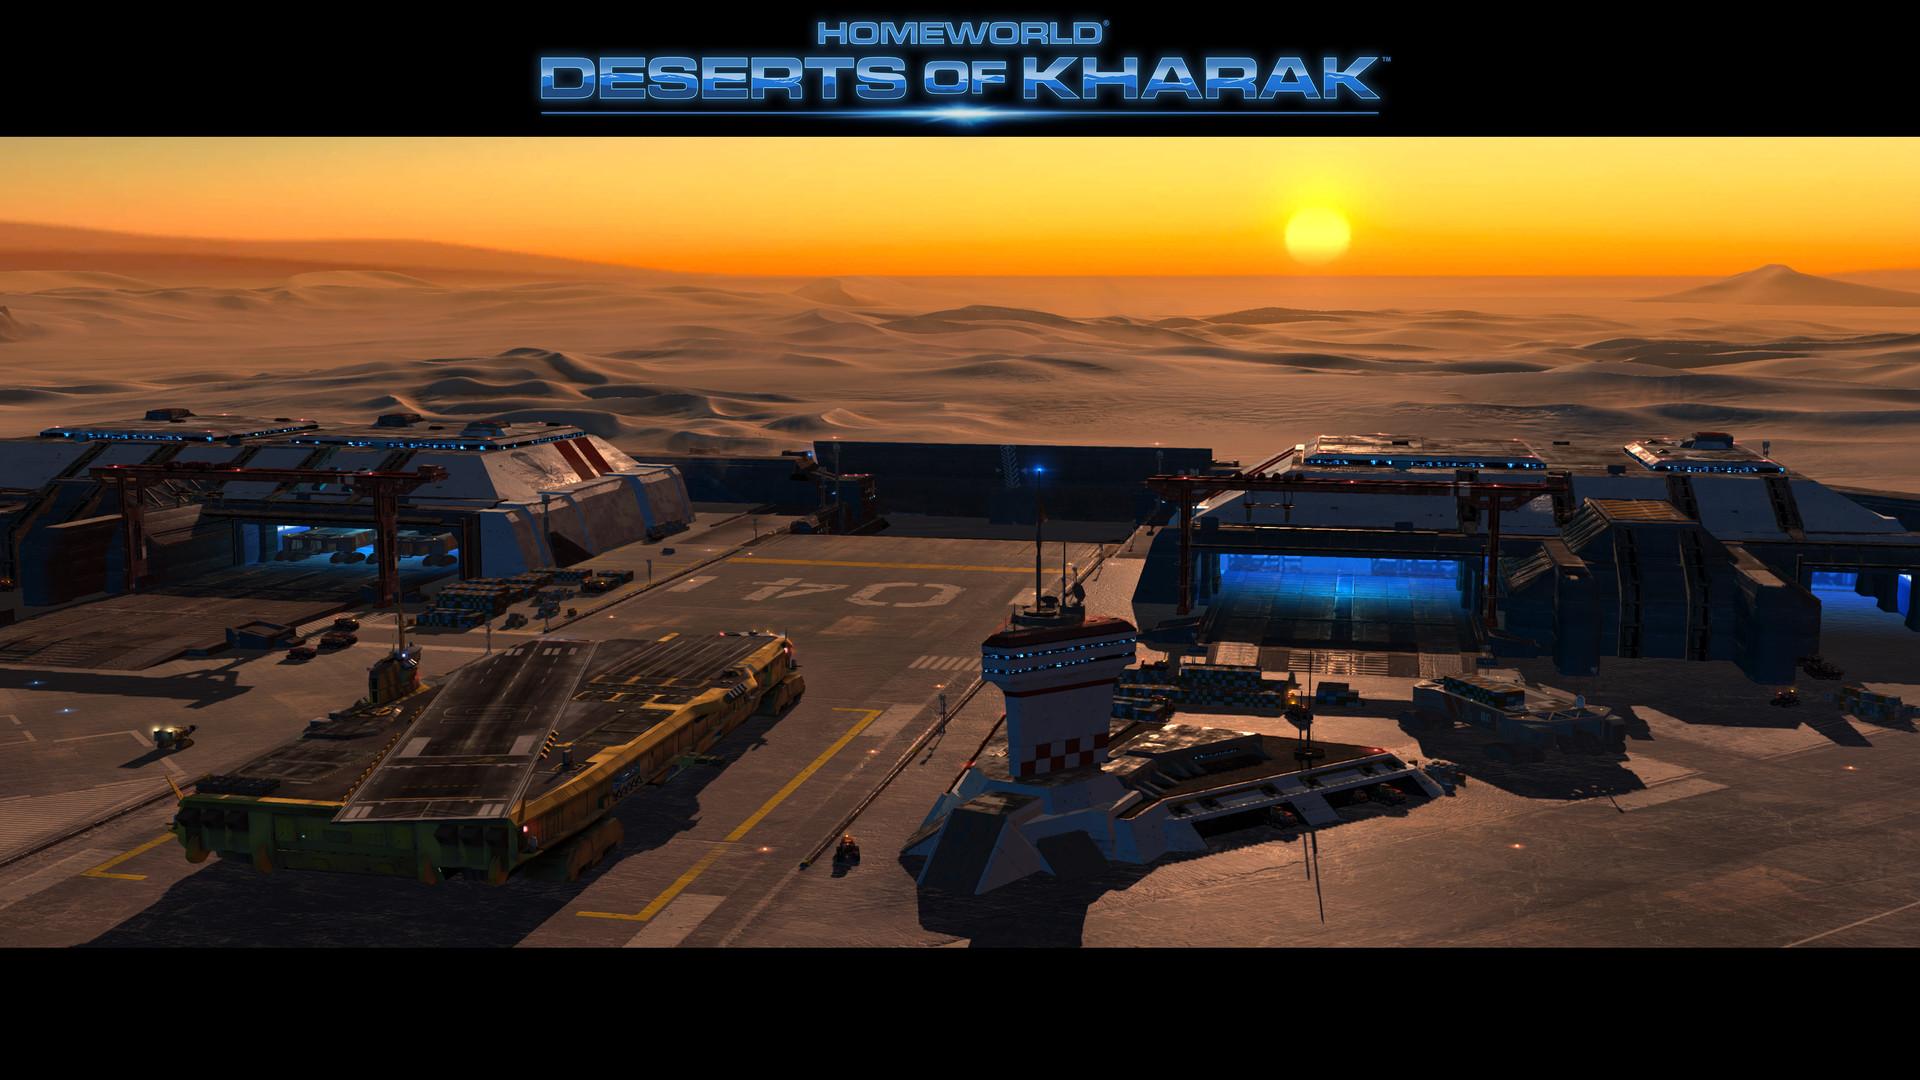 Oficiálny obrázok z hry Homeworld: Deserts of Kharak.